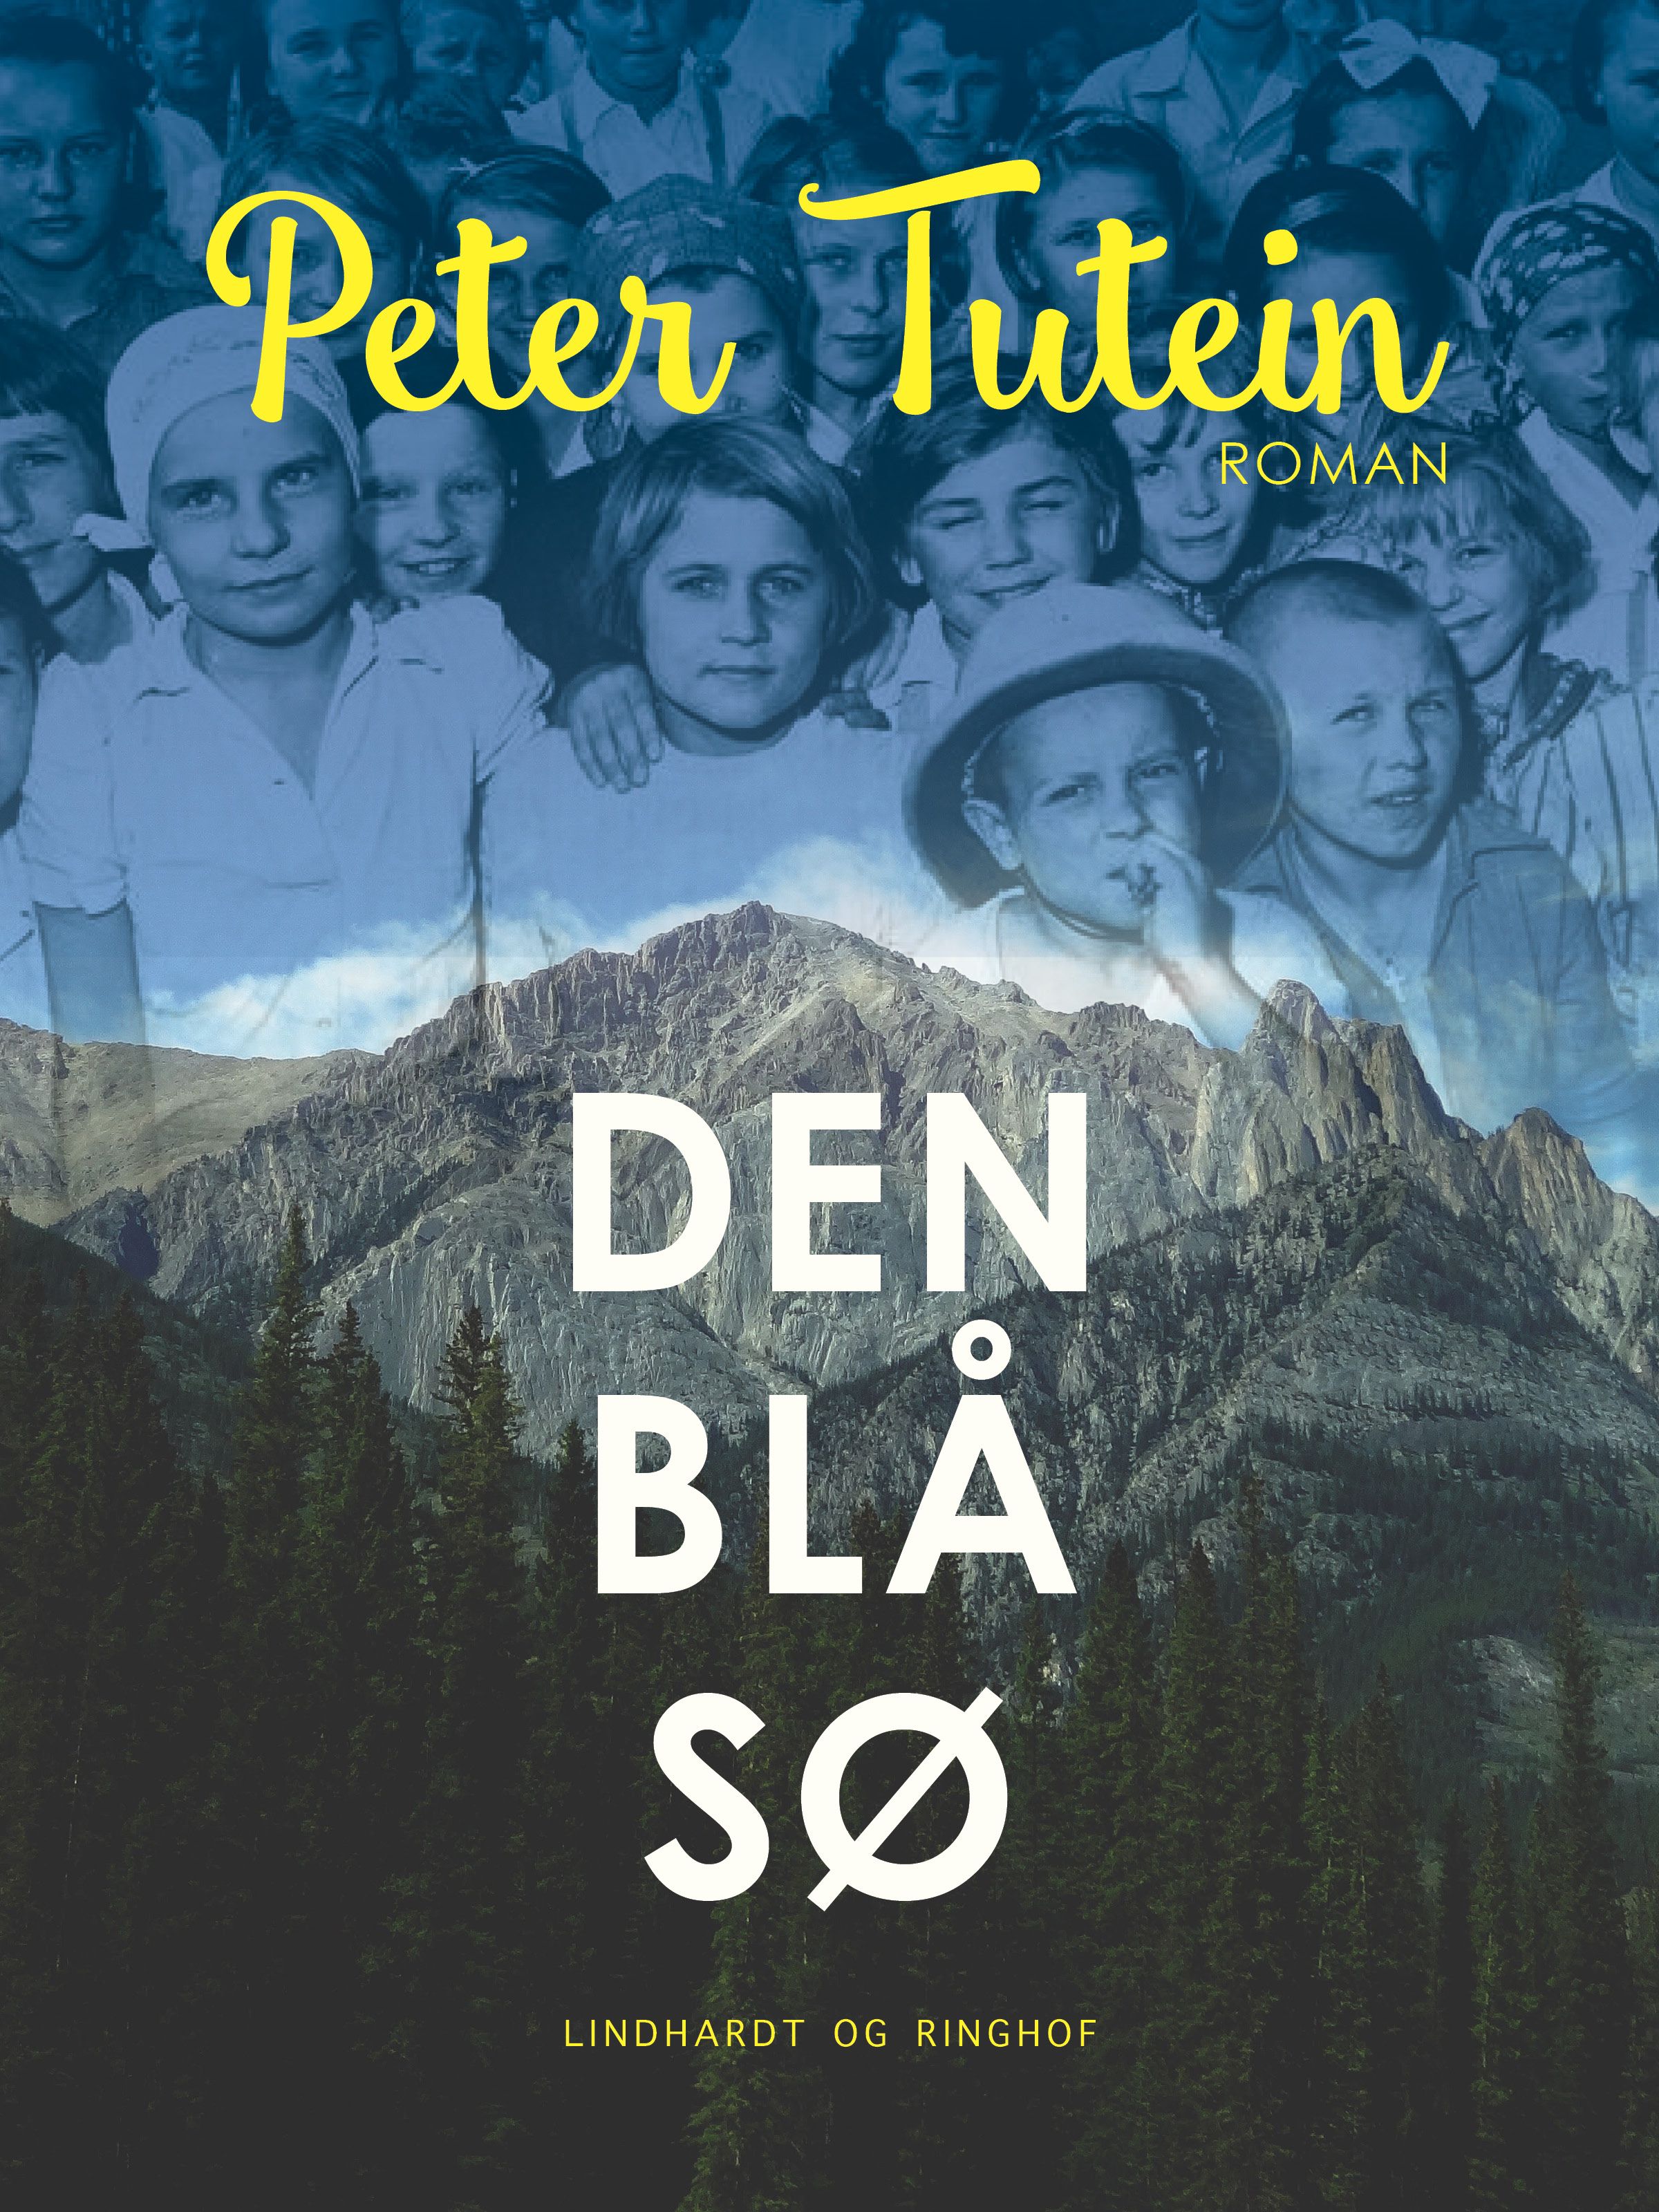 Den blå sø, e-bok av Peter Tutein